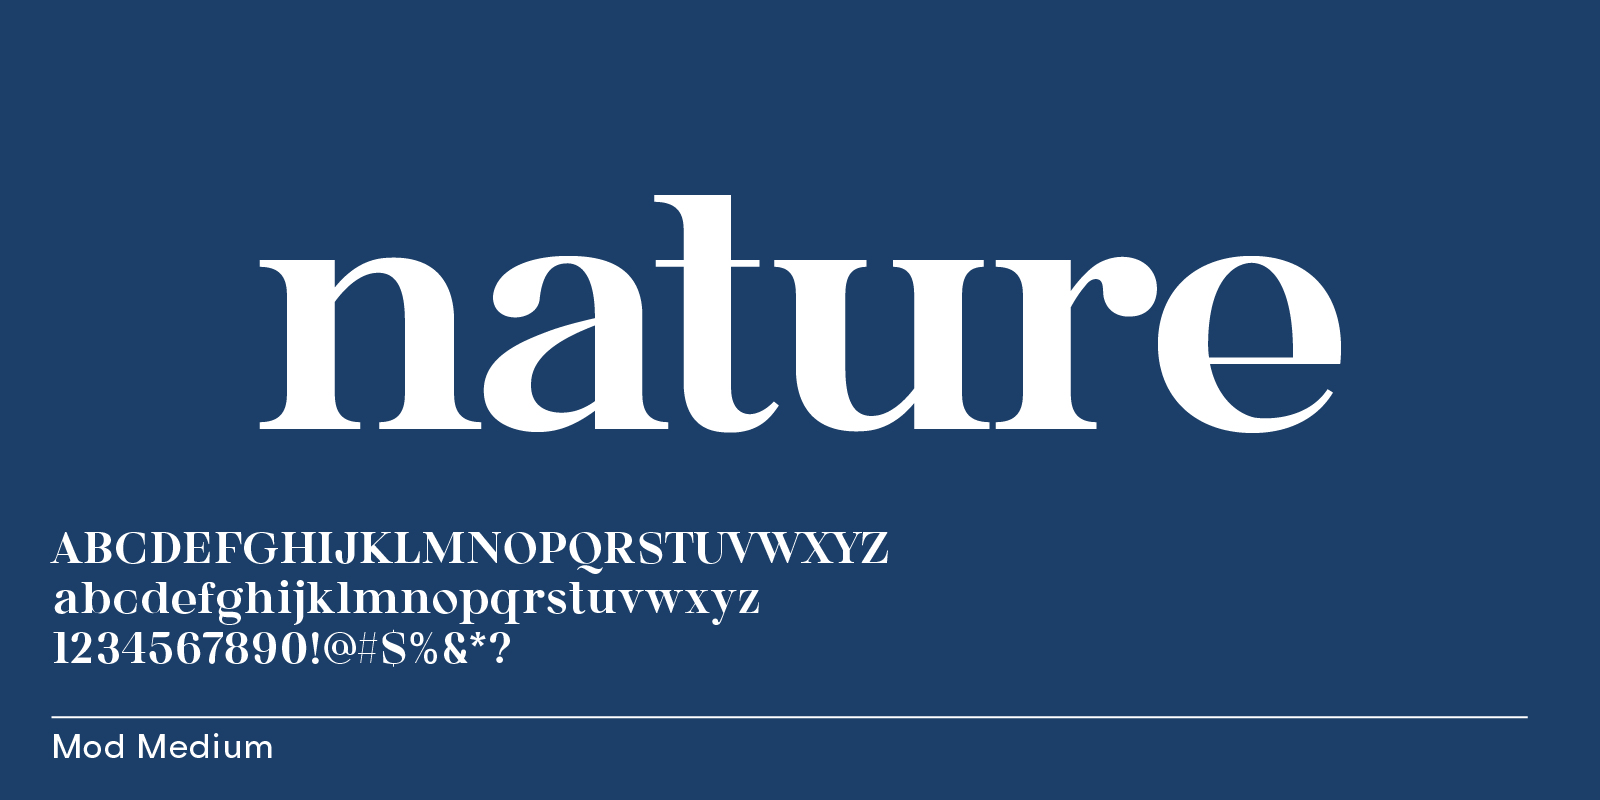 Bauhaus Mod, serif font similar to Nature